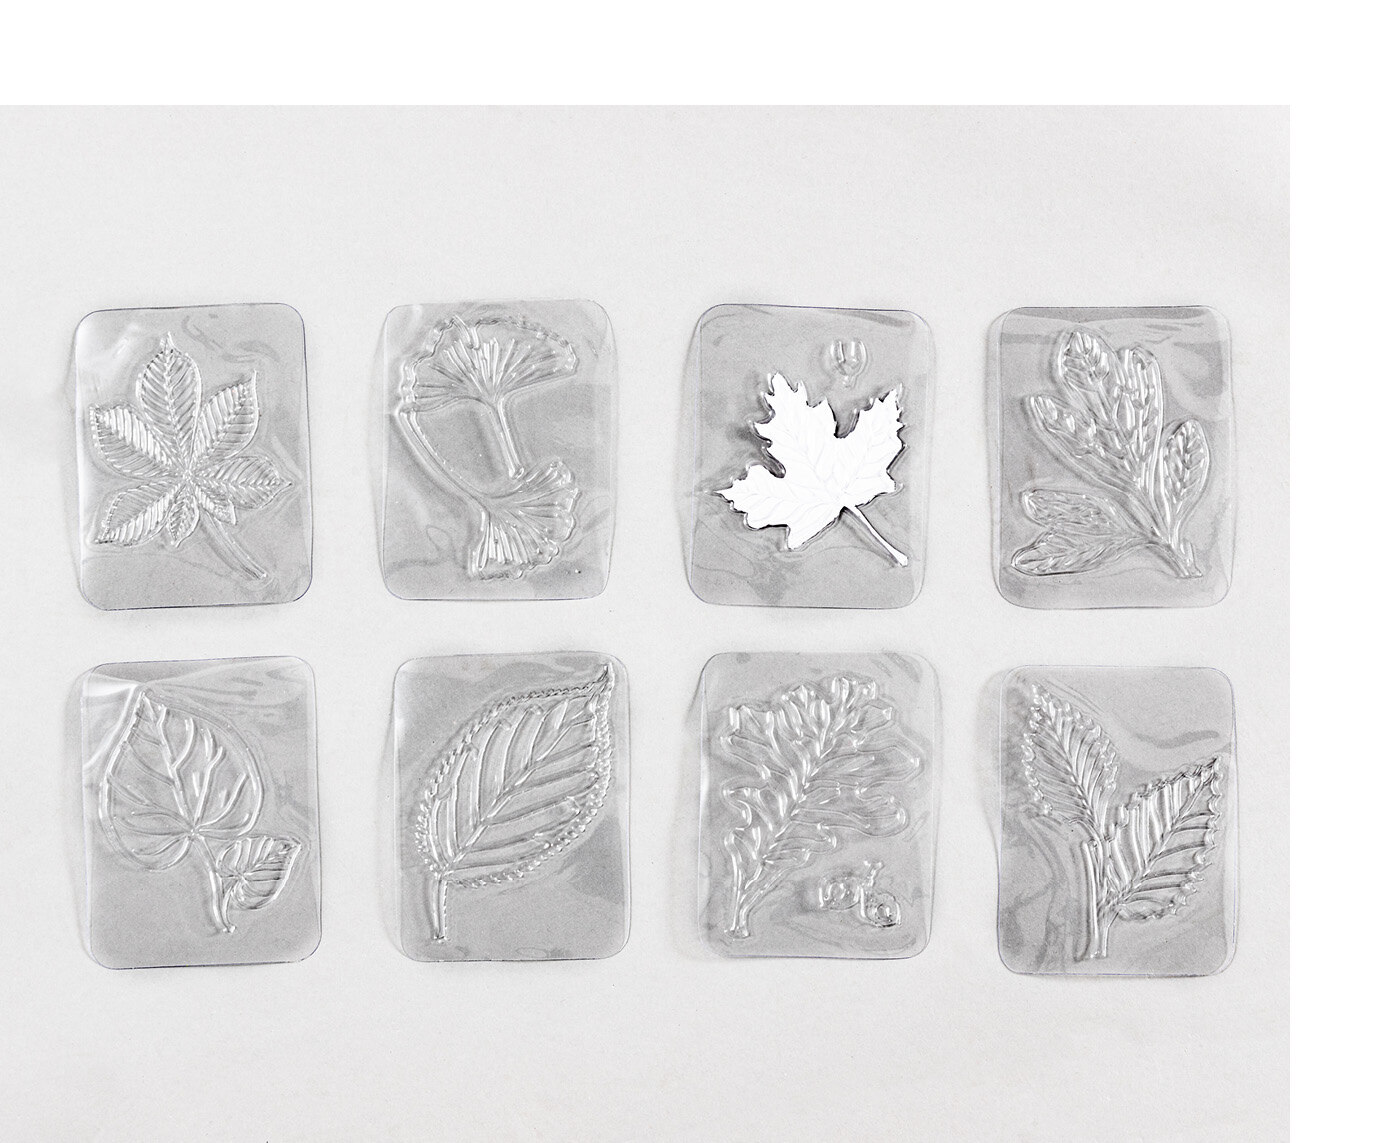 Durchsichtige Kunststoffplatten mit Reliefs von Blättern verschiedener Laubbäume liegen nebeneinander.